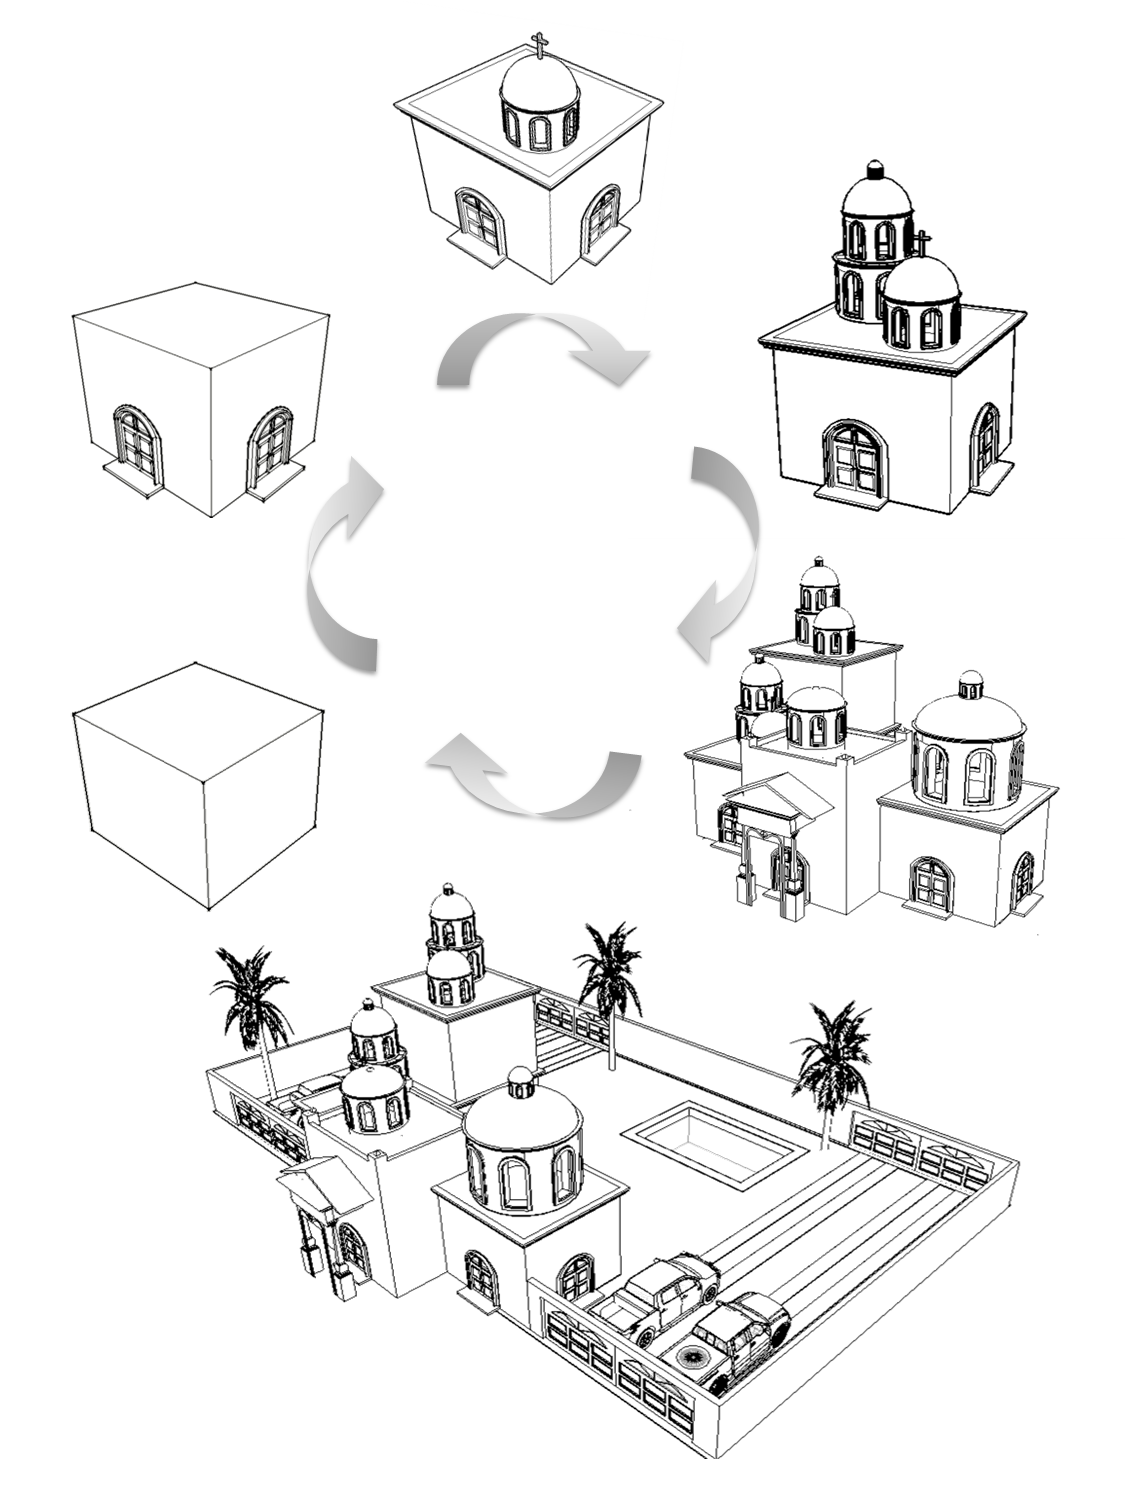 Ilustración de la evolución del diseño narco, desde el cubo módulo básico cristalizado en la tumba hasta la residencia. (Elaboración del autor).